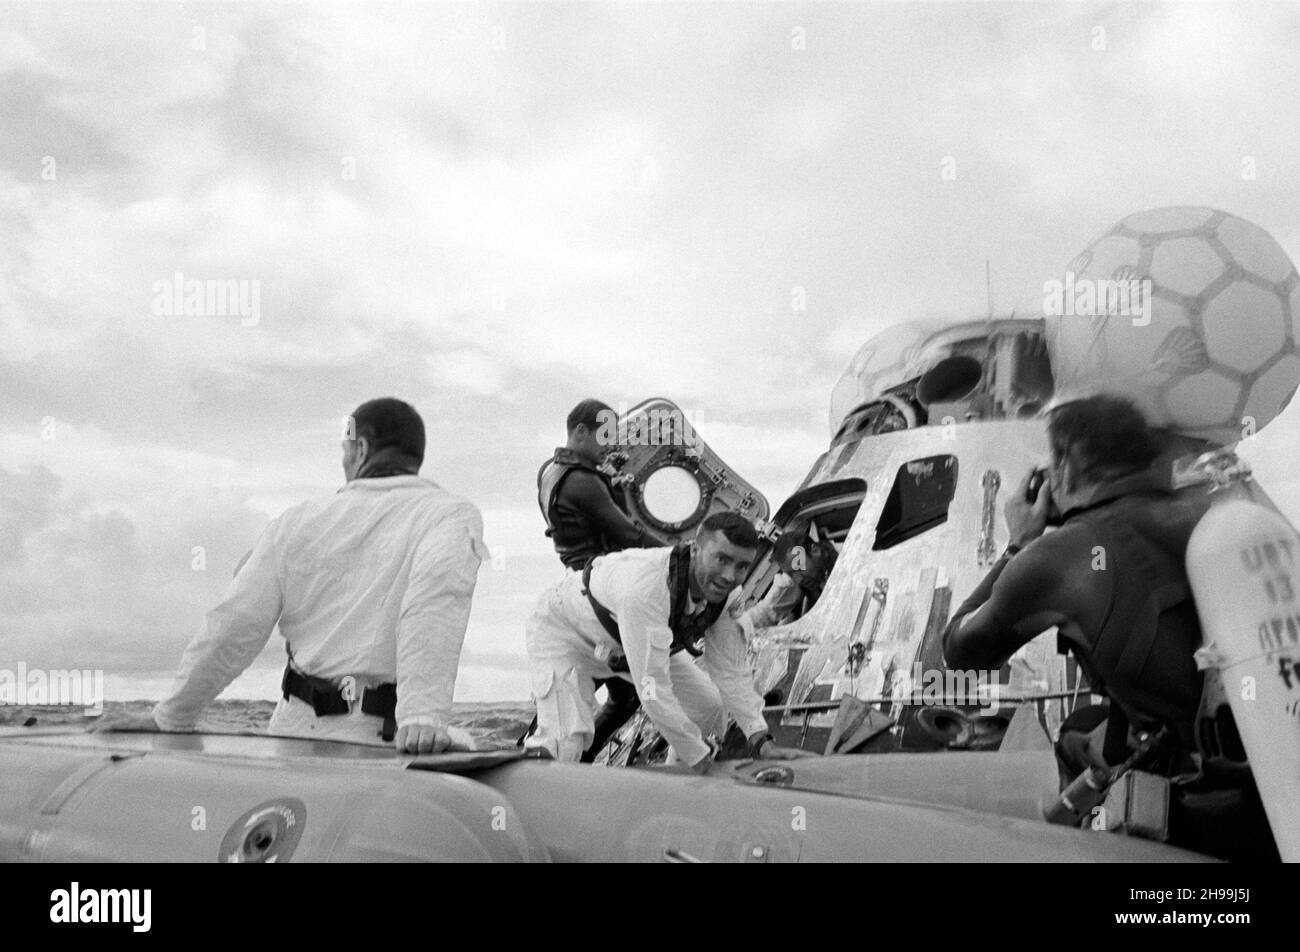 Vista del nivel del agua de las operaciones de recuperación de Apollo 13 en el Océano Pacífico Sur. A los tres astronautas se les ve a la salida de su nave espacial. John L. Swigert Jr. (De vuelta a la cámara), piloto de módulo de mando, ya está en la balsa de la vida. Fred W. Haise Jr., piloto del módulo lunar, frente a la cámara, está entrando en la balsa de la vida. James A. Lovell Jr., comandante, está dejando la nave espacial en el fondo. Un equipo de demolición submarina de la Marina de los Estados Unidos asiste en las operaciones de recuperación. Los tres tripulantes fueron recogidos en helicóptero y volados al buque de recuperación principal, USS Iwo Jima Foto de stock